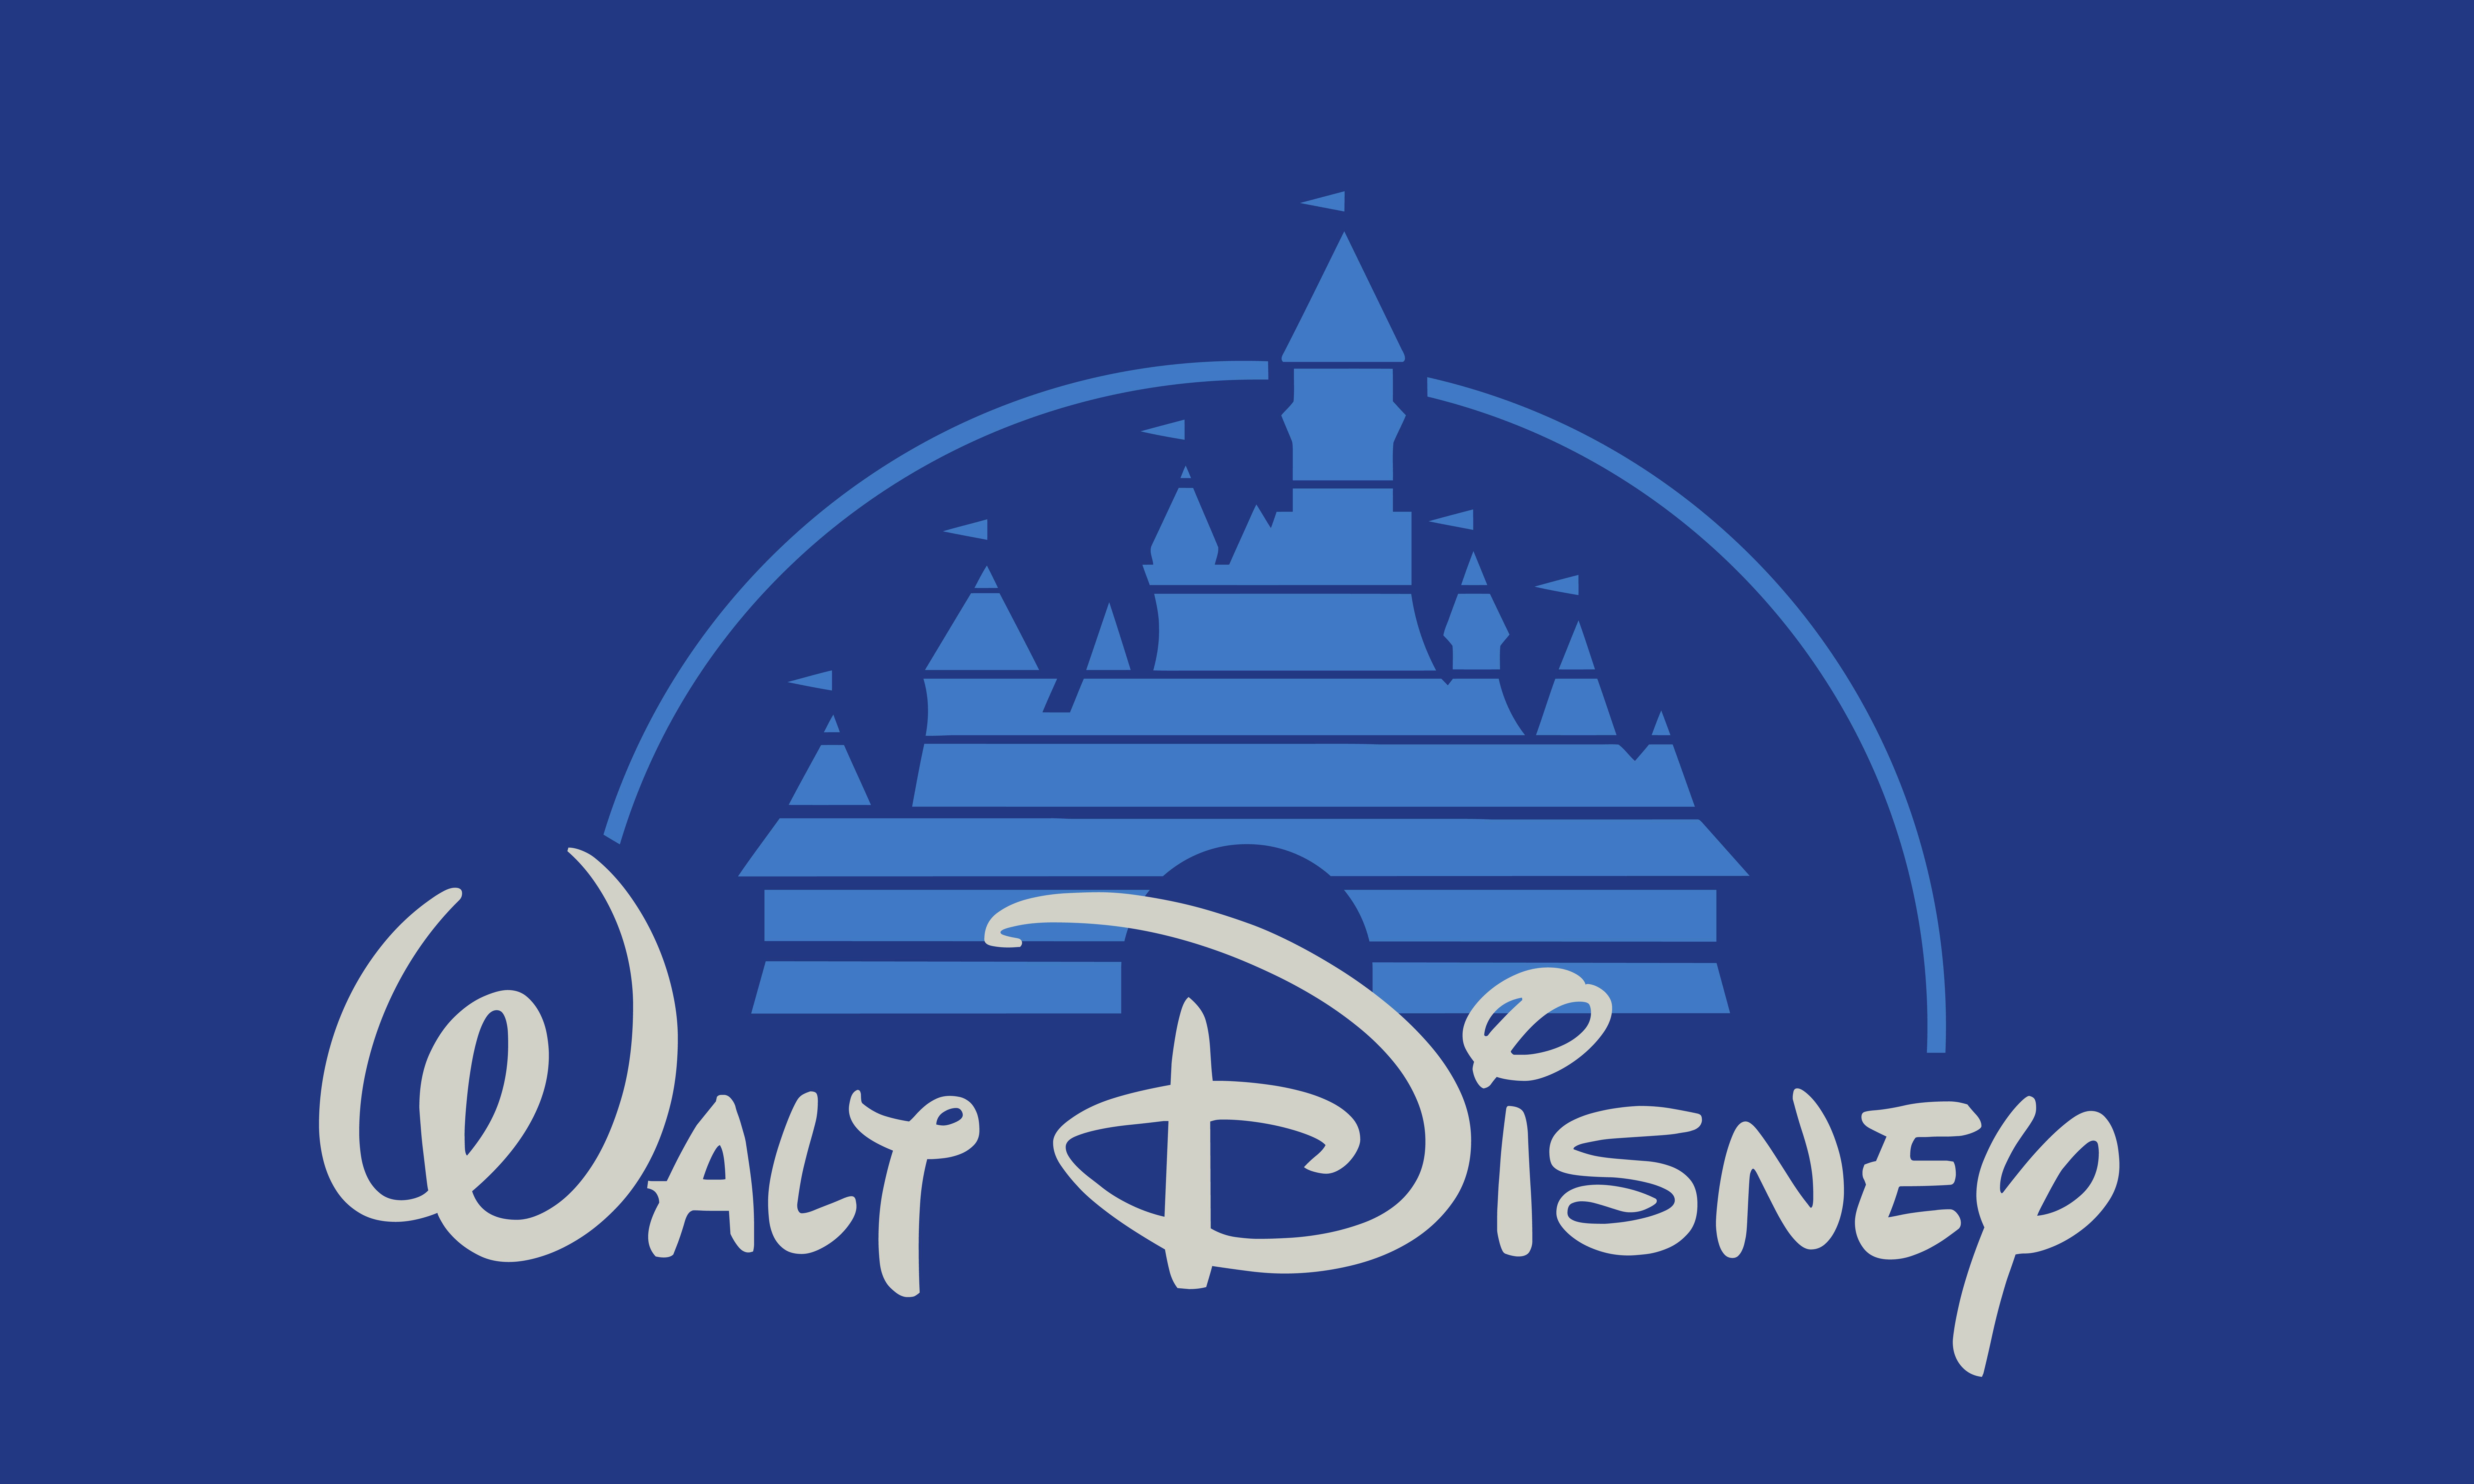 walt disney world magic kingdom walt disney world logo